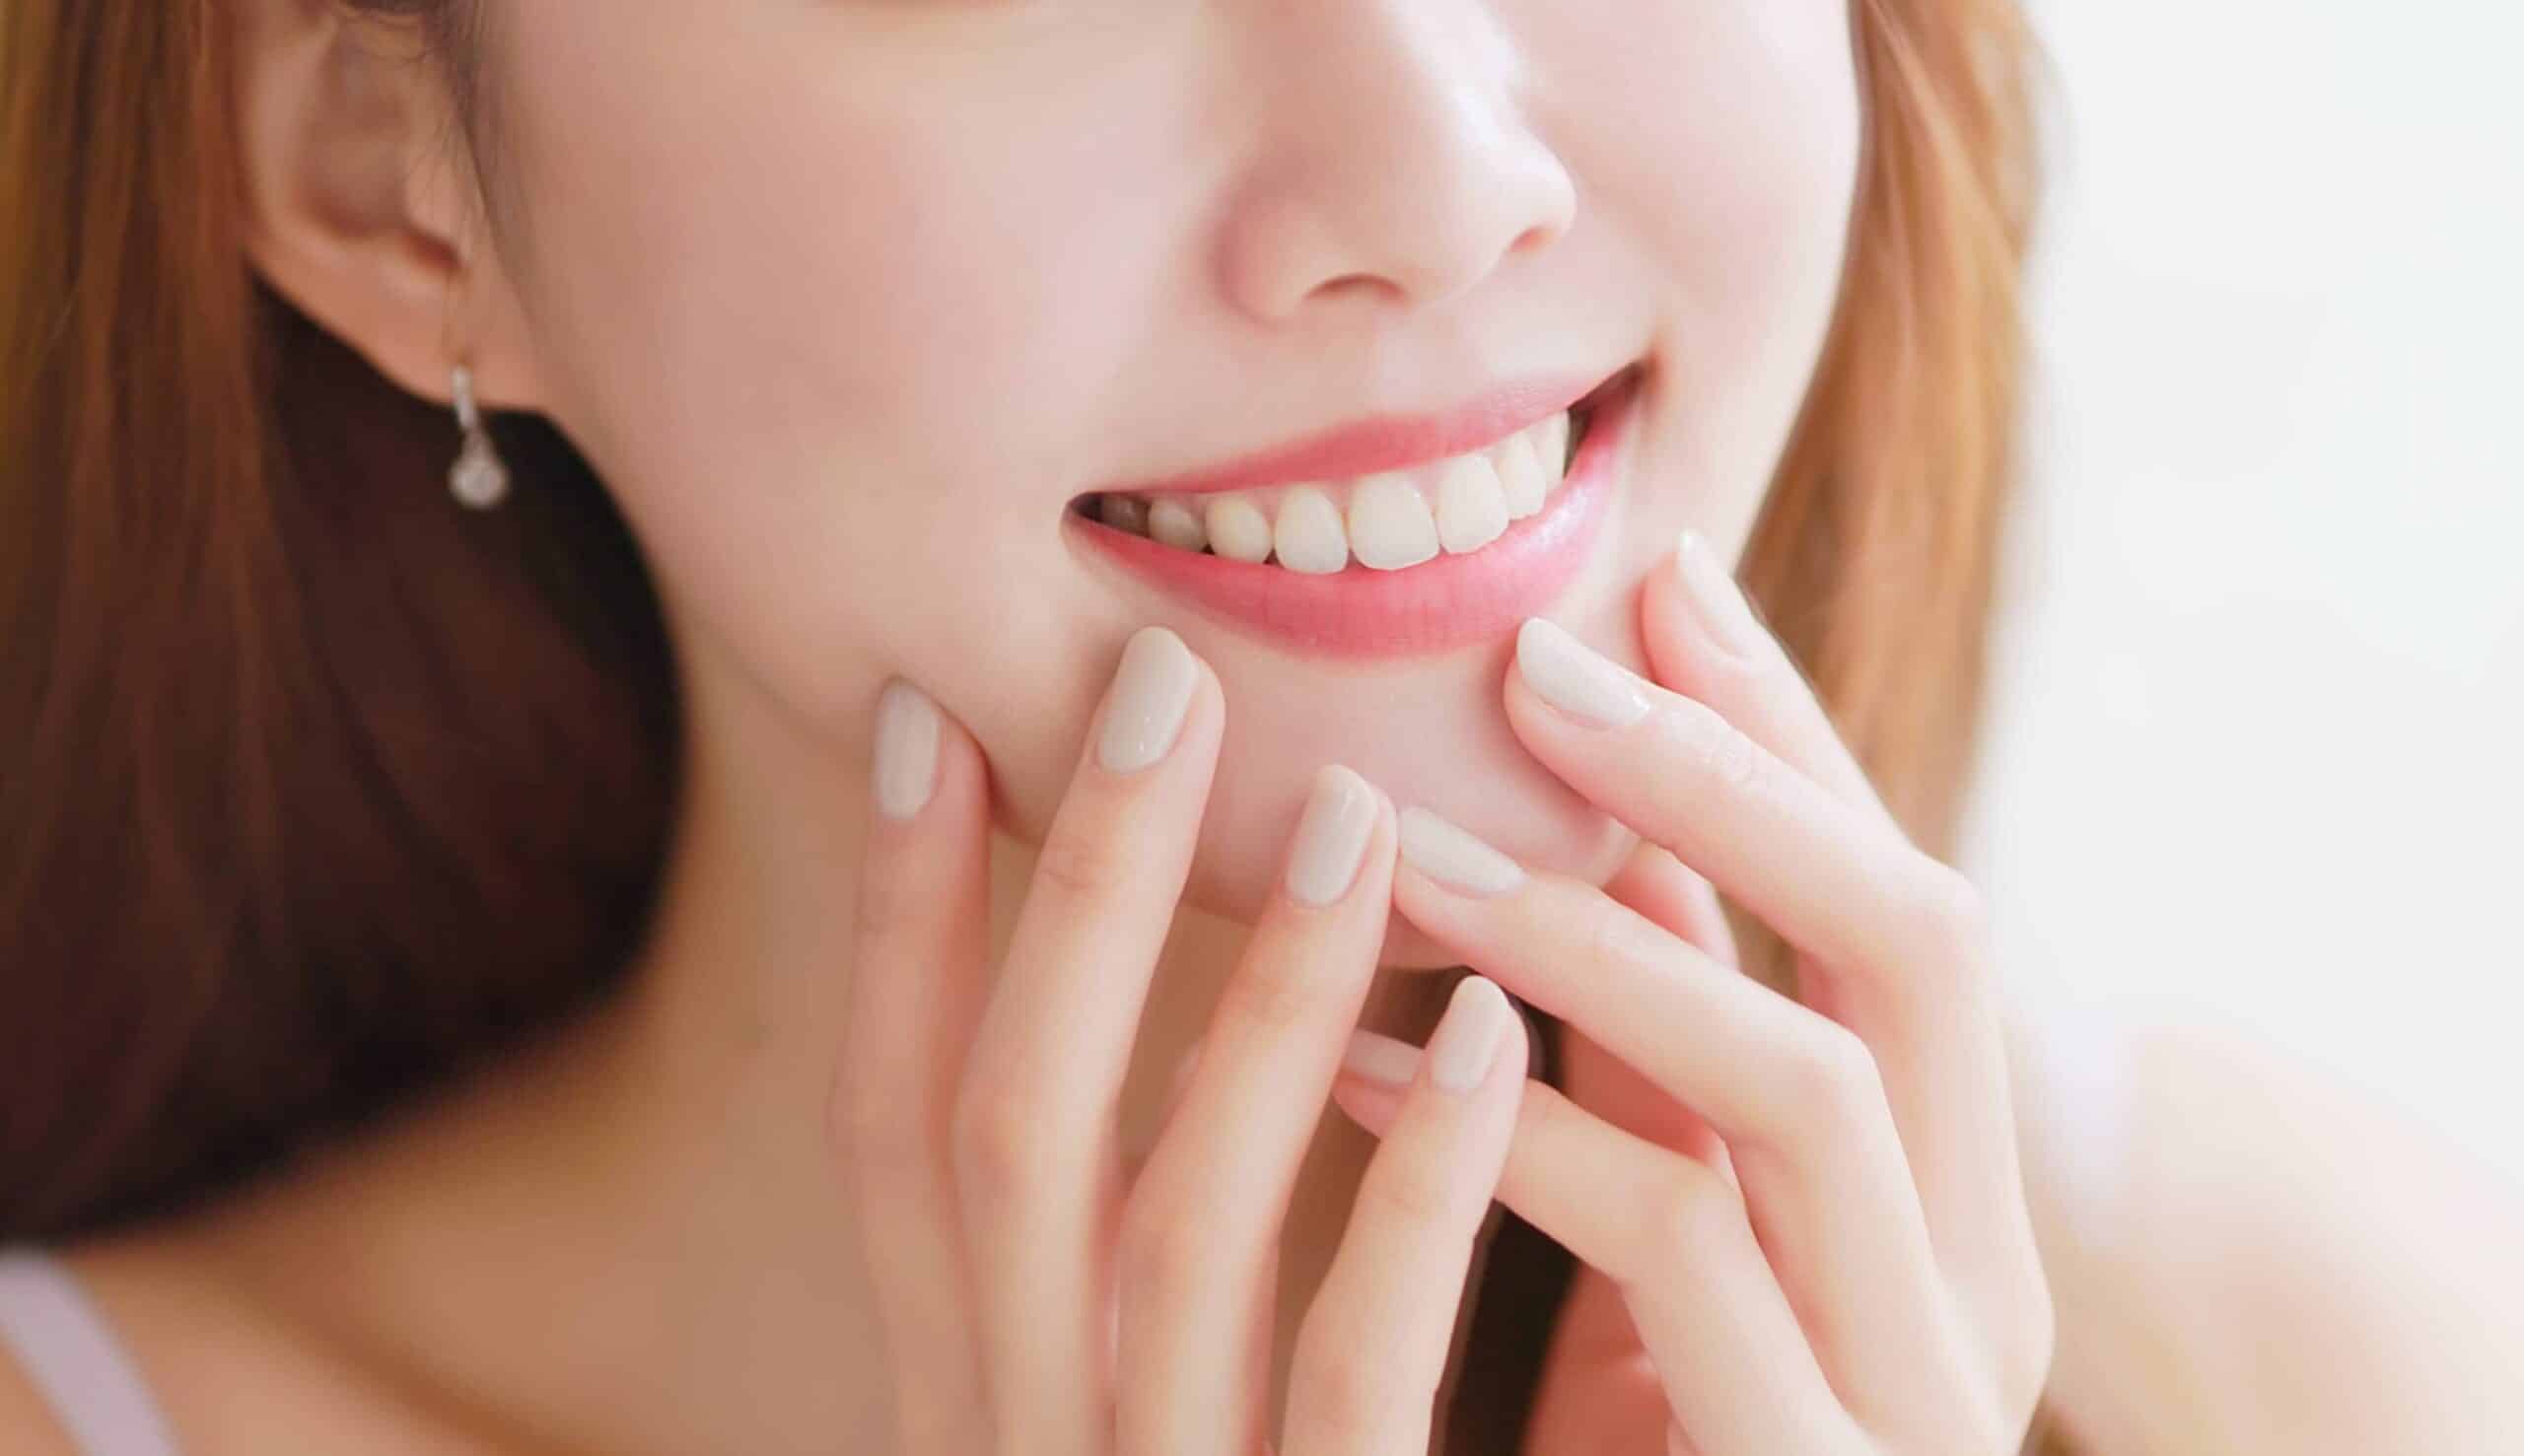 Les dents peuvent-elles bouger après un traitement orthodontique ? | Clinique dentaire Sana Oris | Paris 8